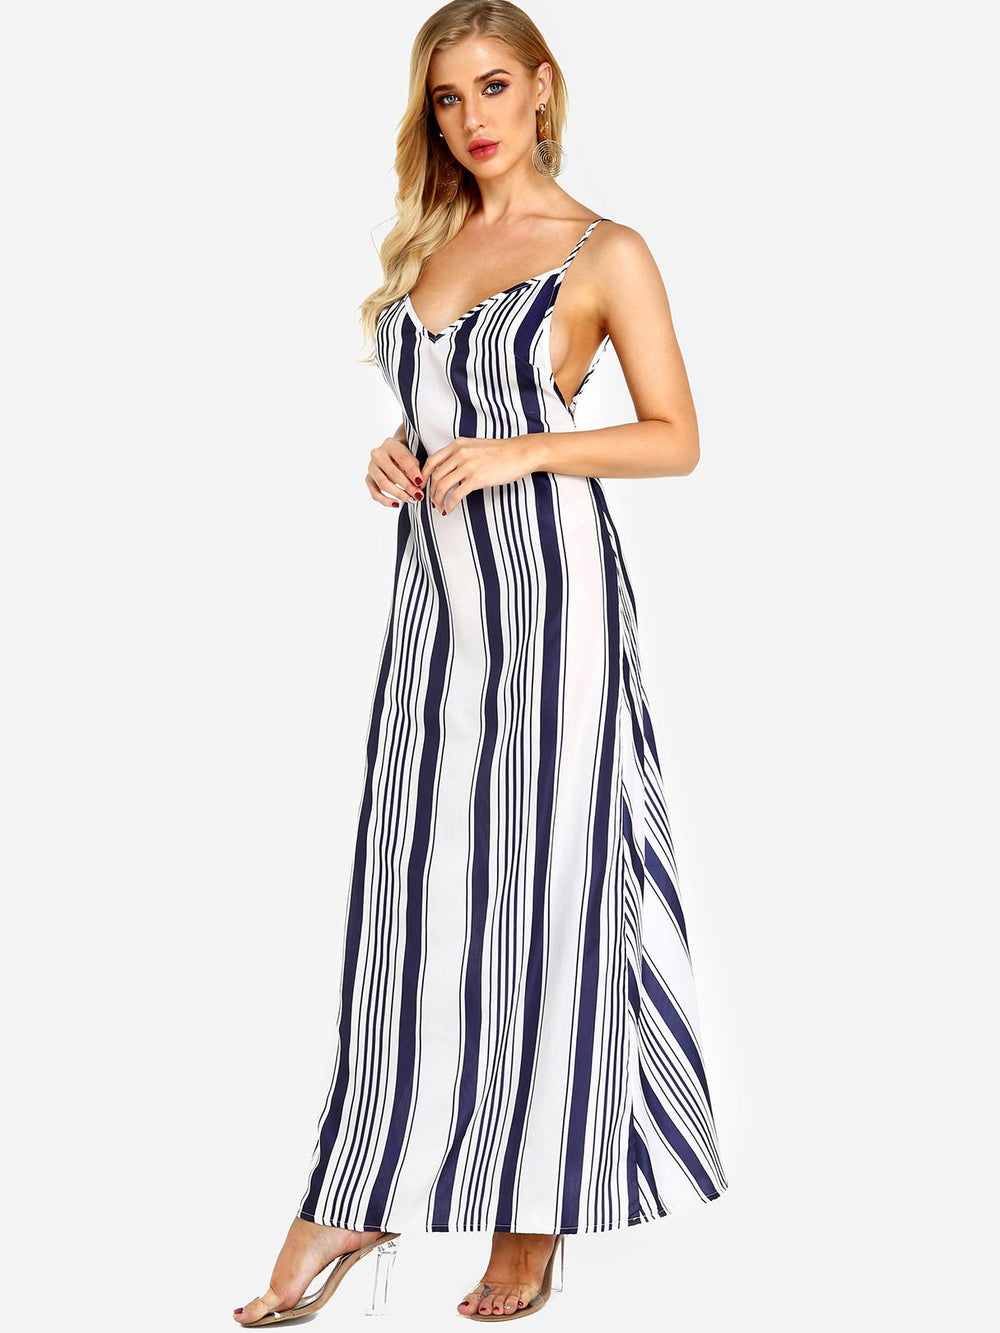 Ladies Striped Maxi Dresses